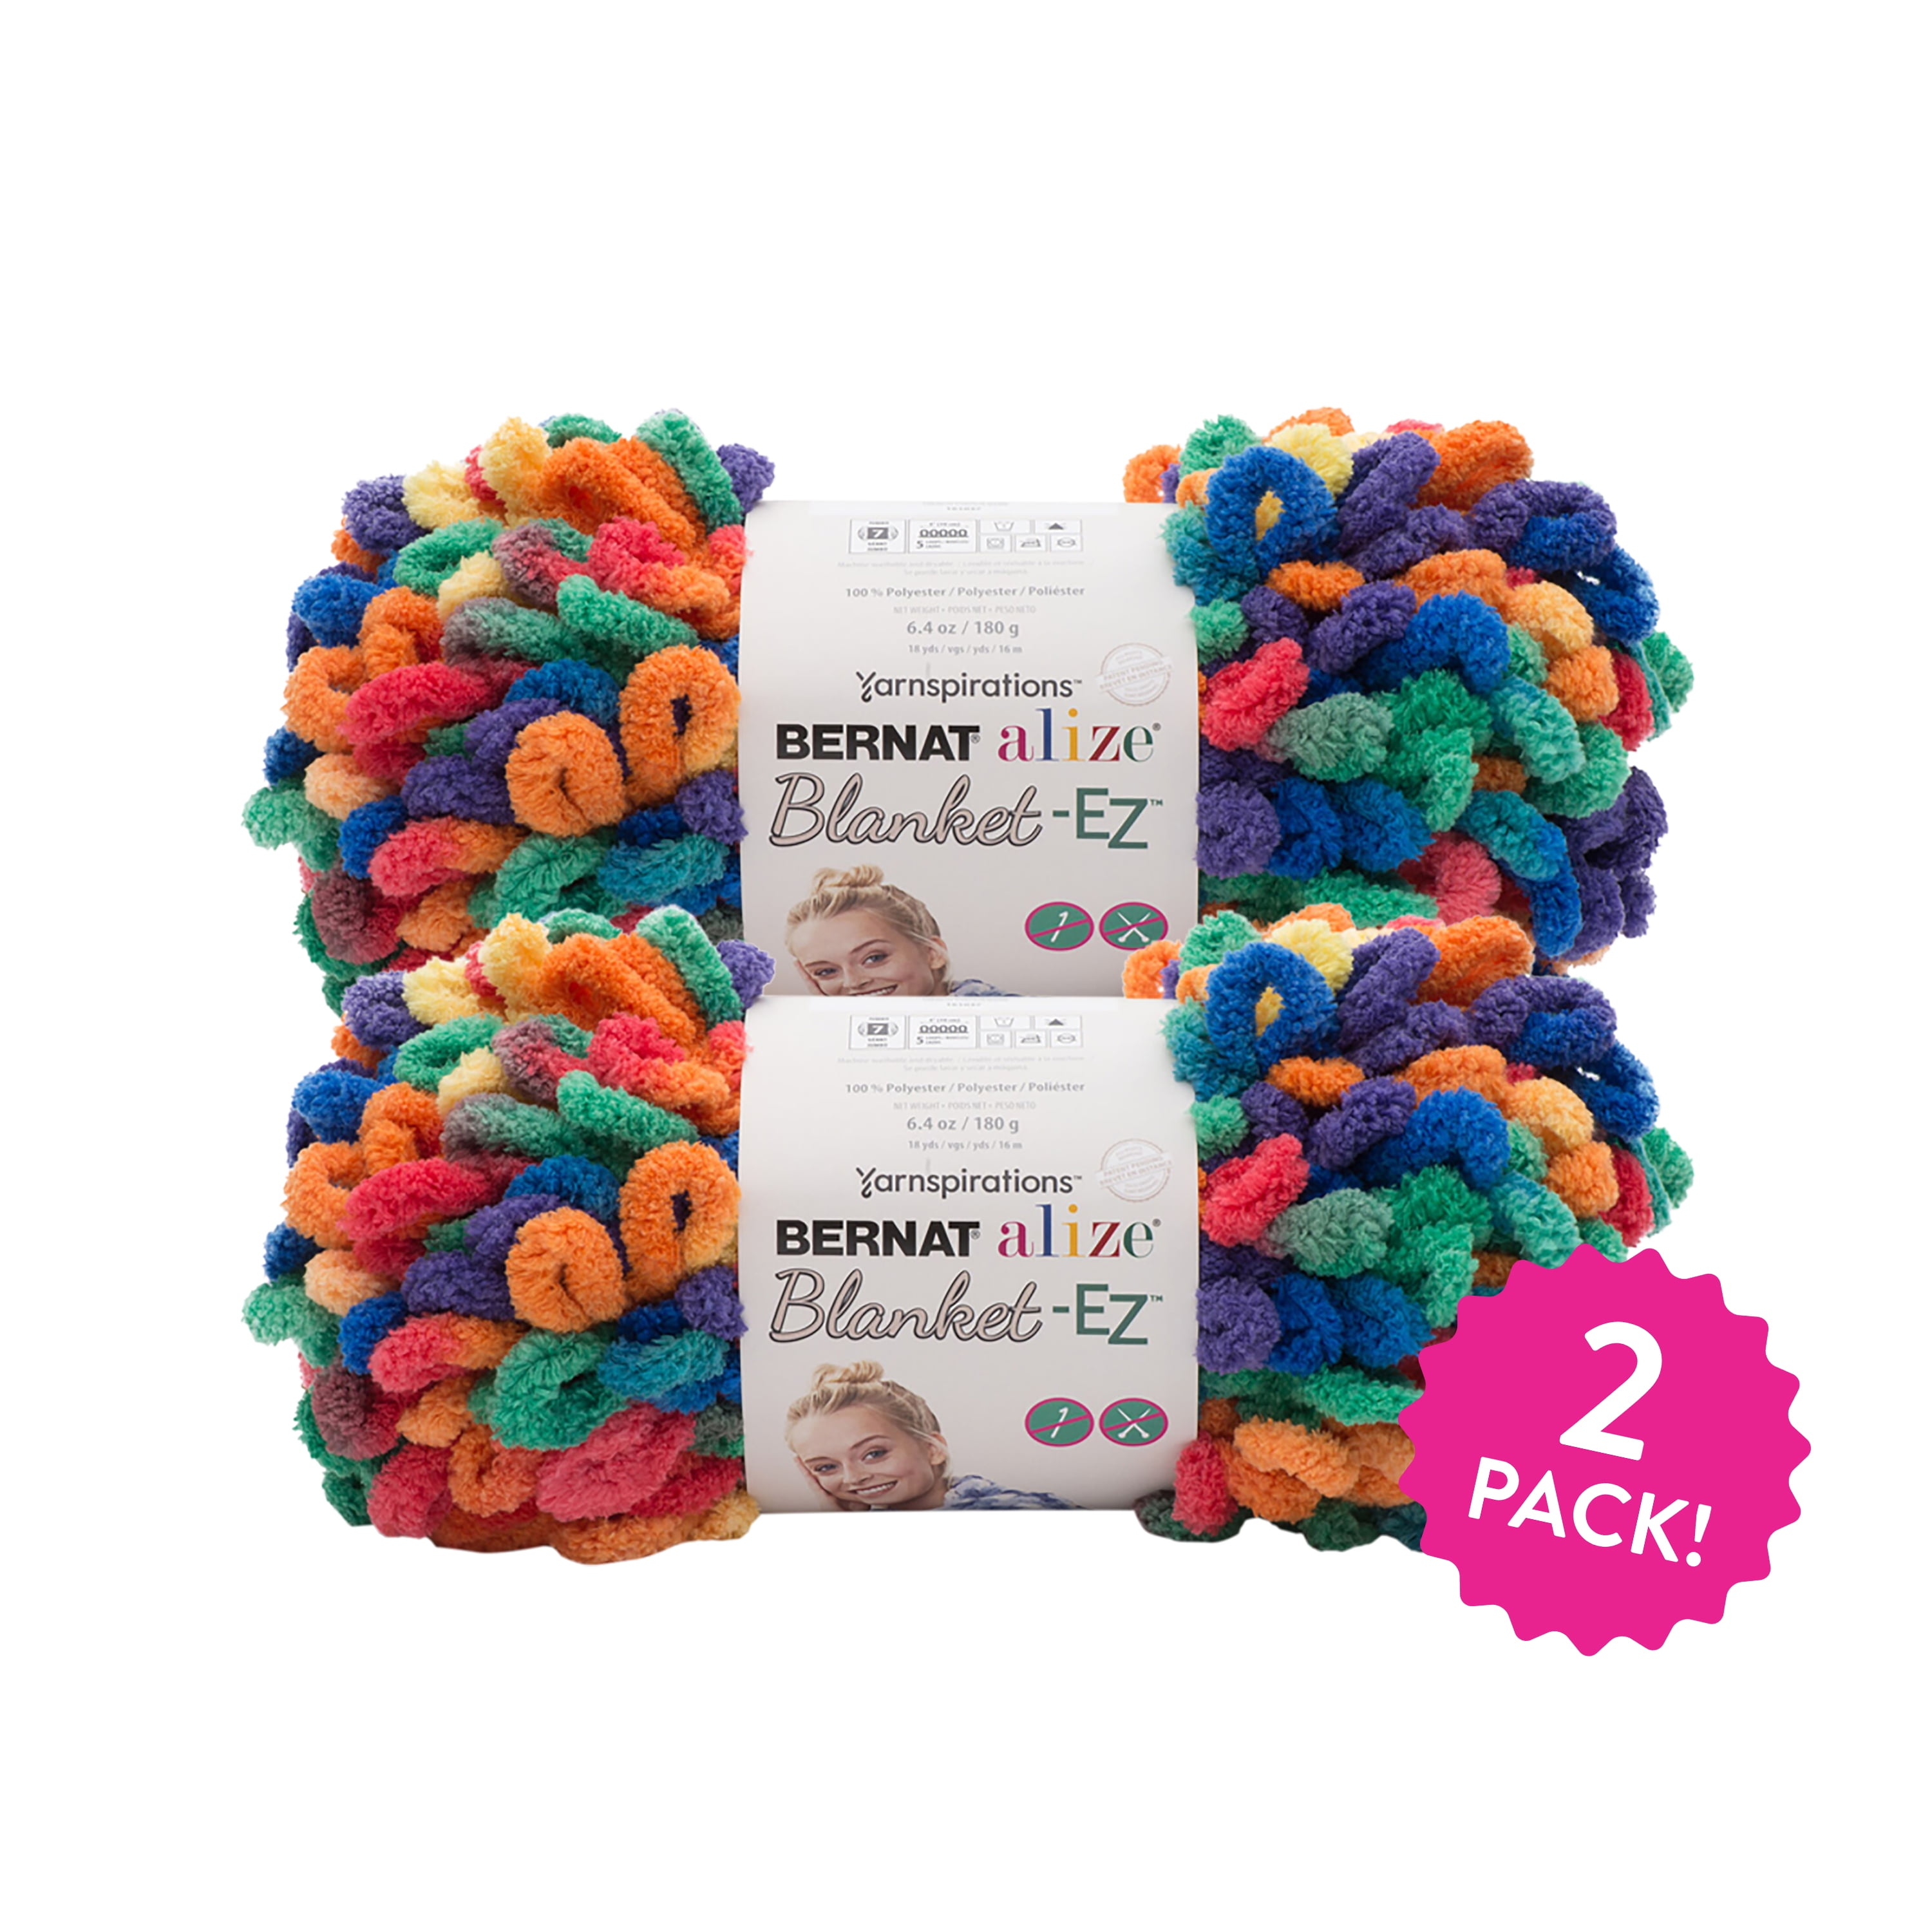 ALIZE SOFTY Yarn Gradient Yarn Multicolor Yarn For Kids Rainbow Yarn Plush Yarn  Baby Yarn Soft